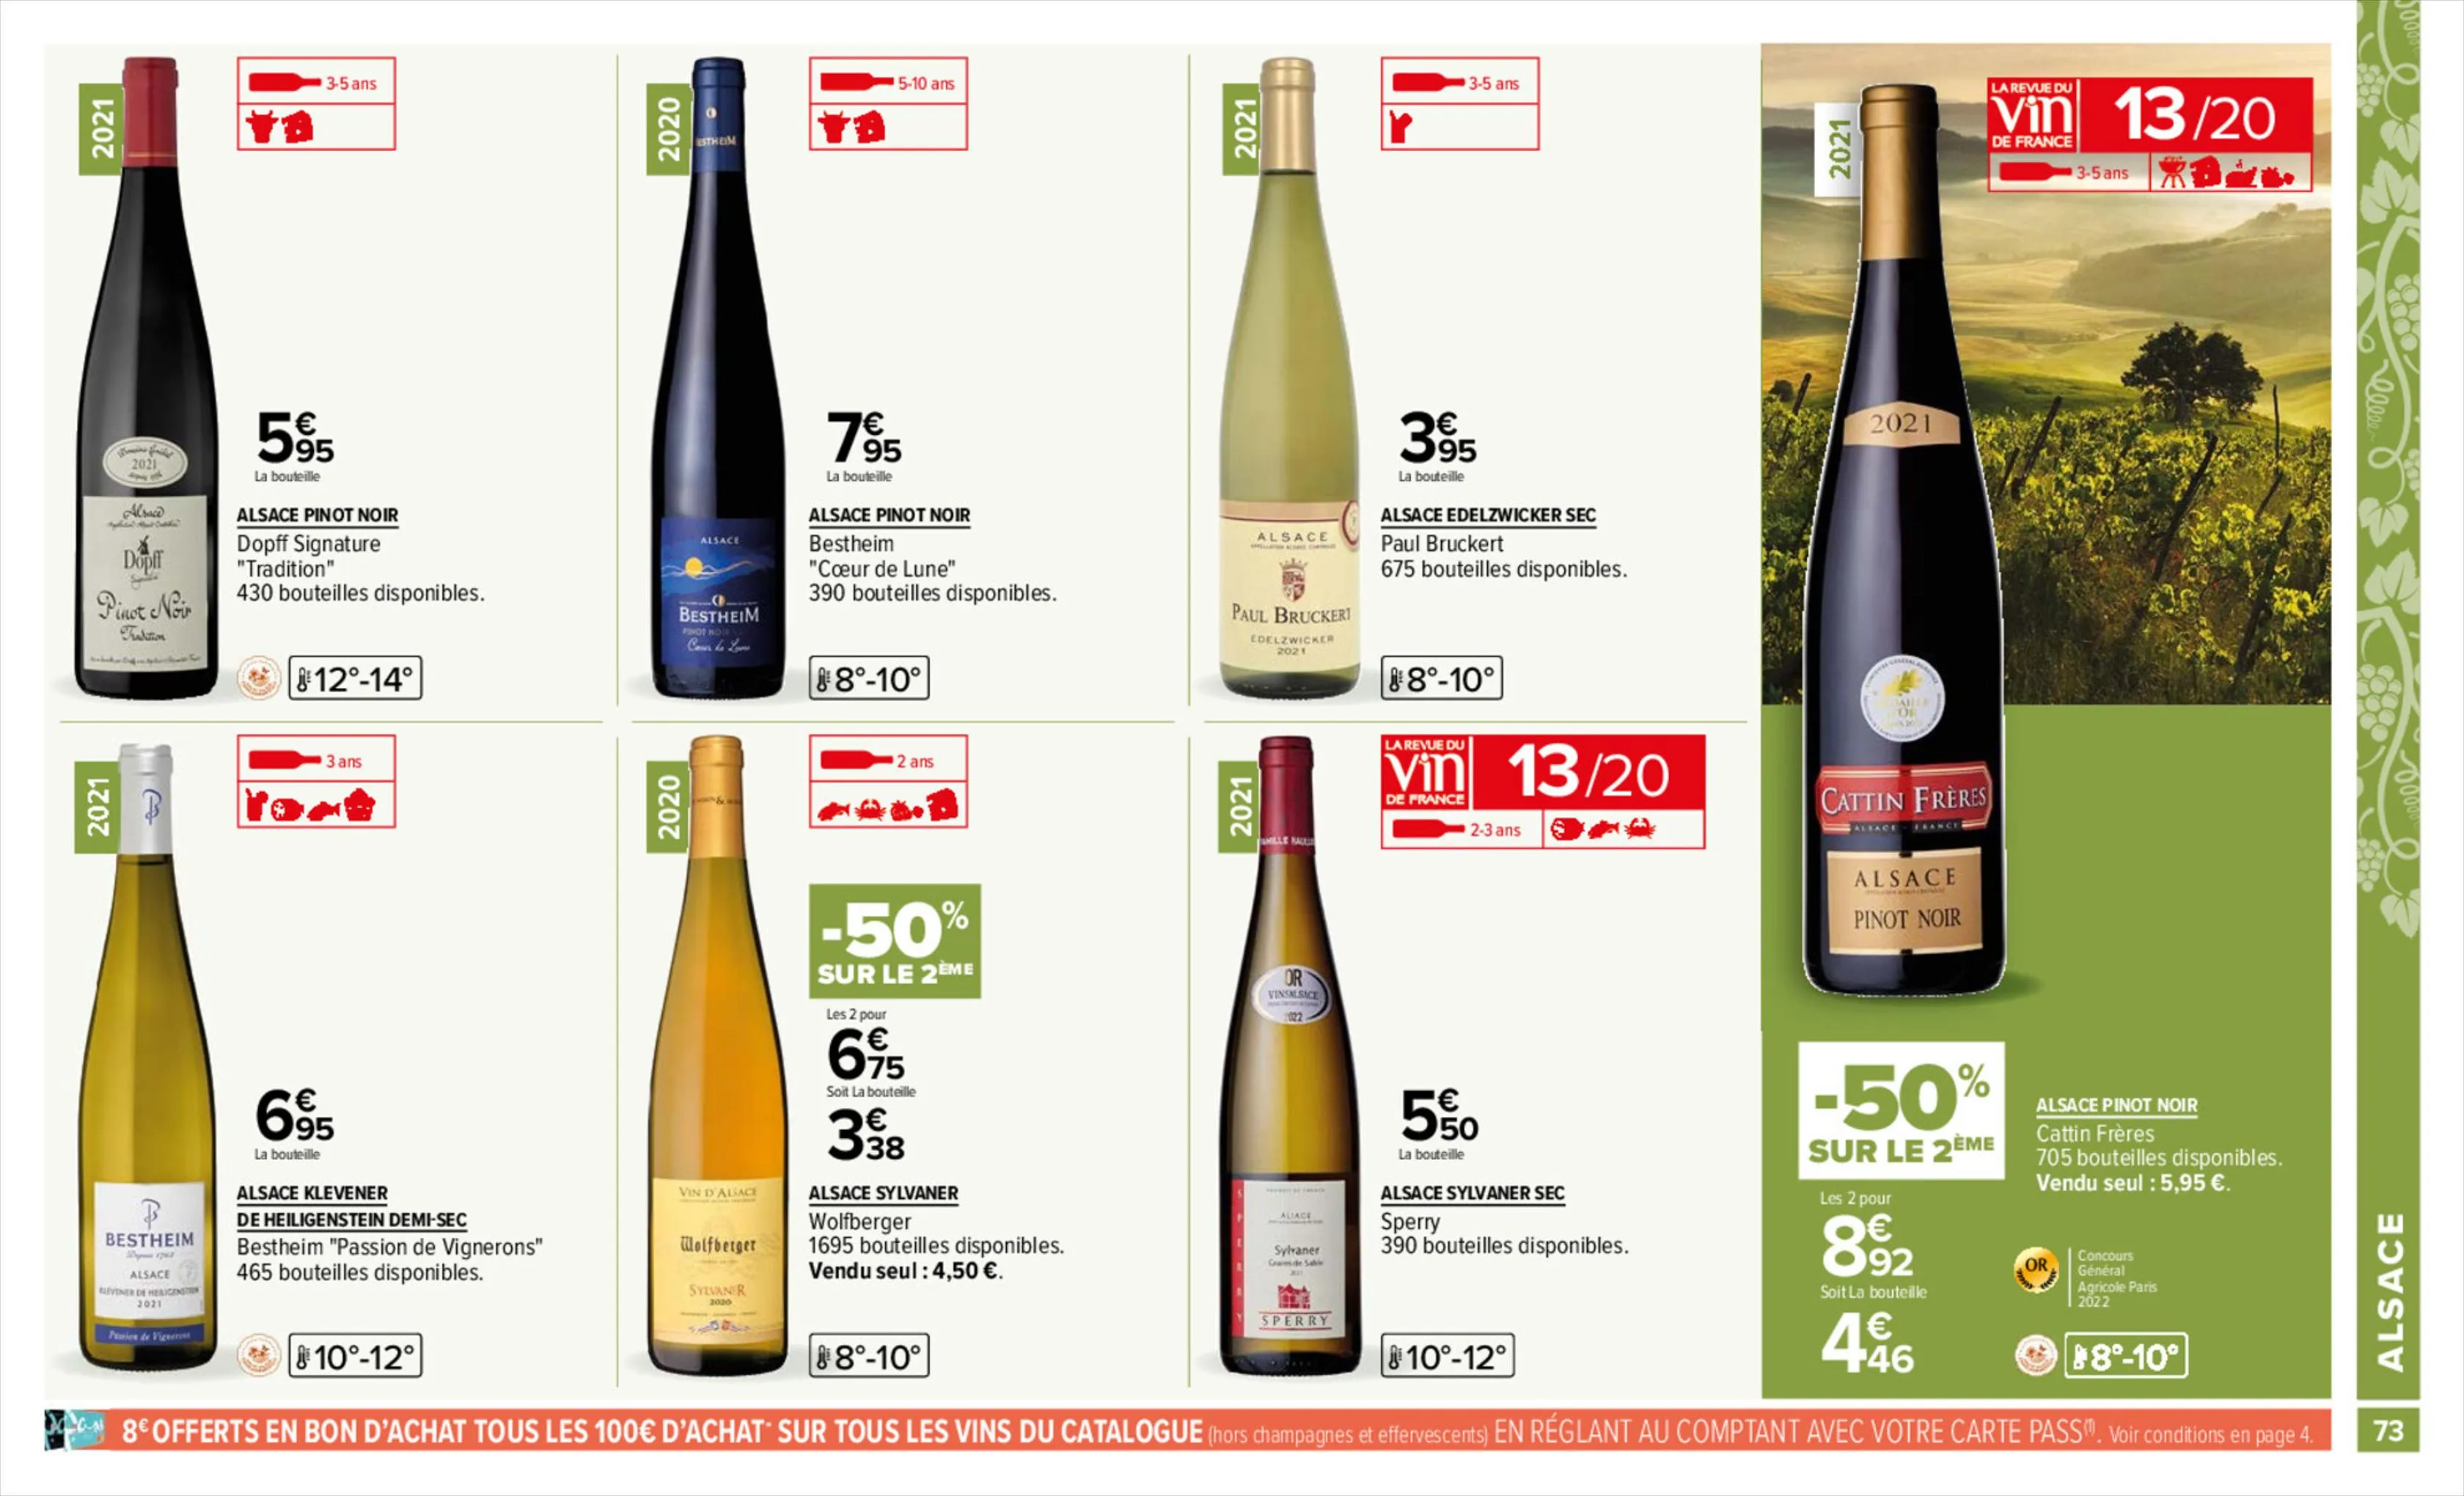 Catalogue Foire aux vins, page 00073